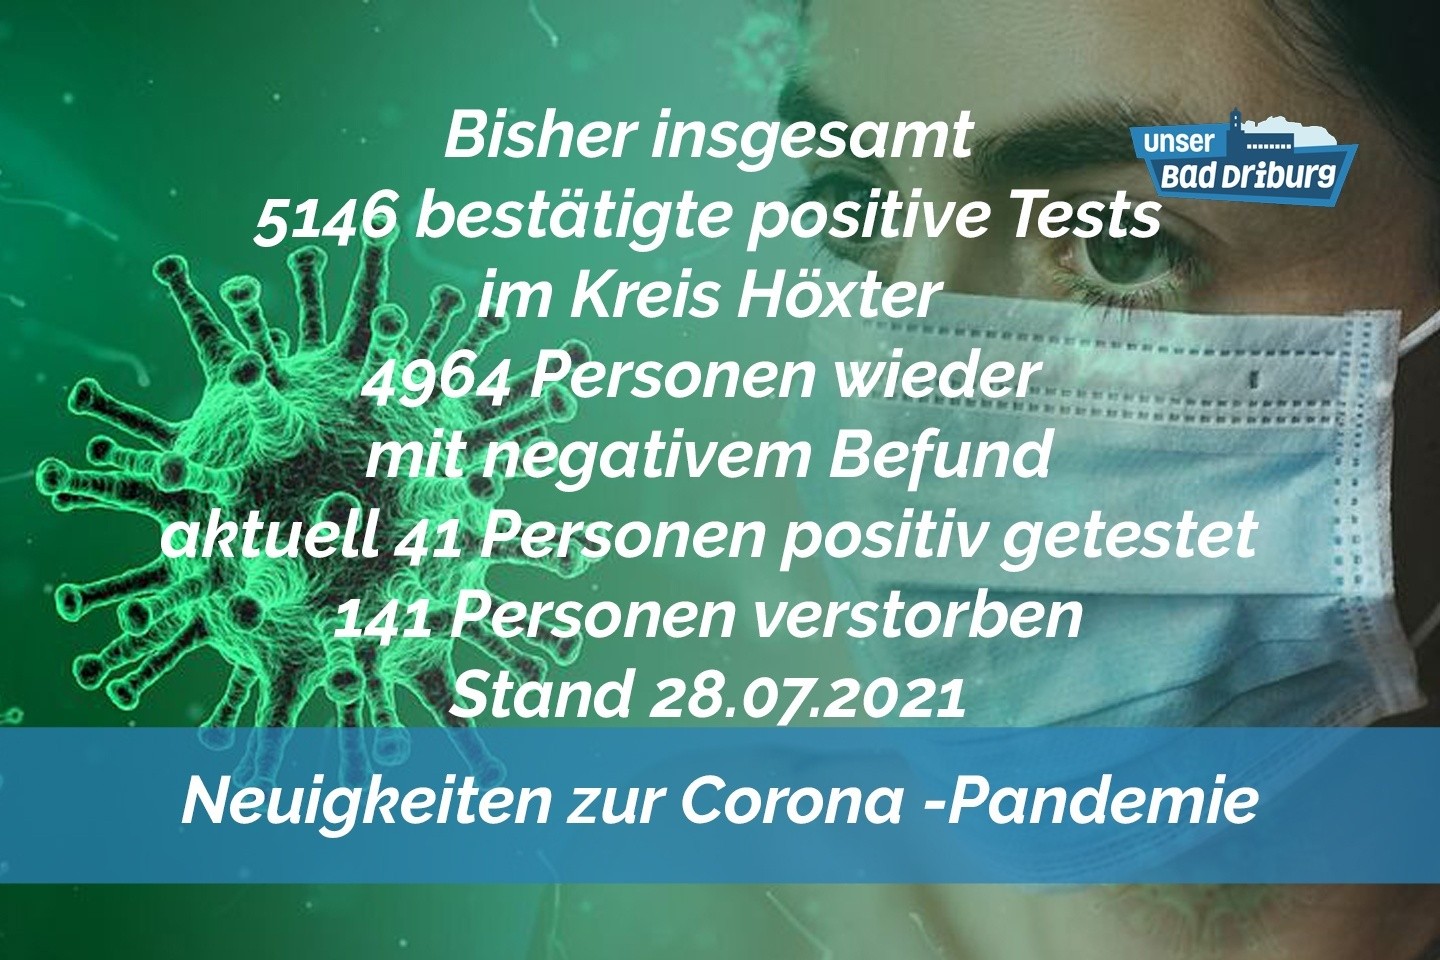 Update 28. Juli: 3 weitere amtlich positive Tests im Kreis Höxter